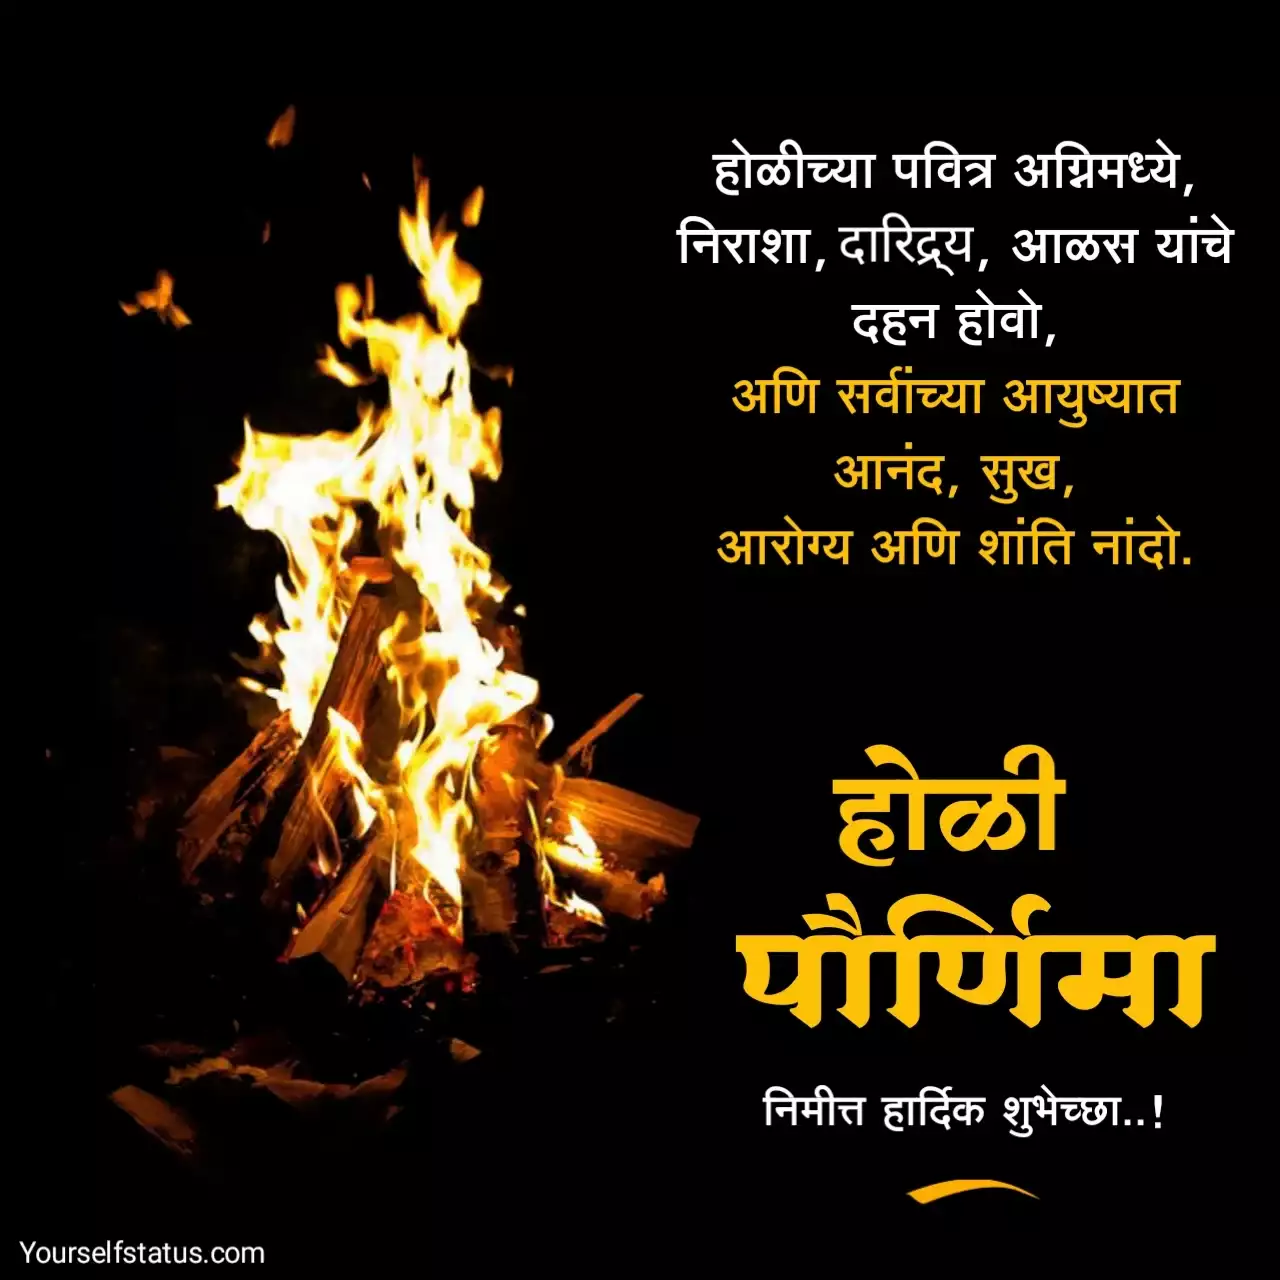 Holi wishes in marathi